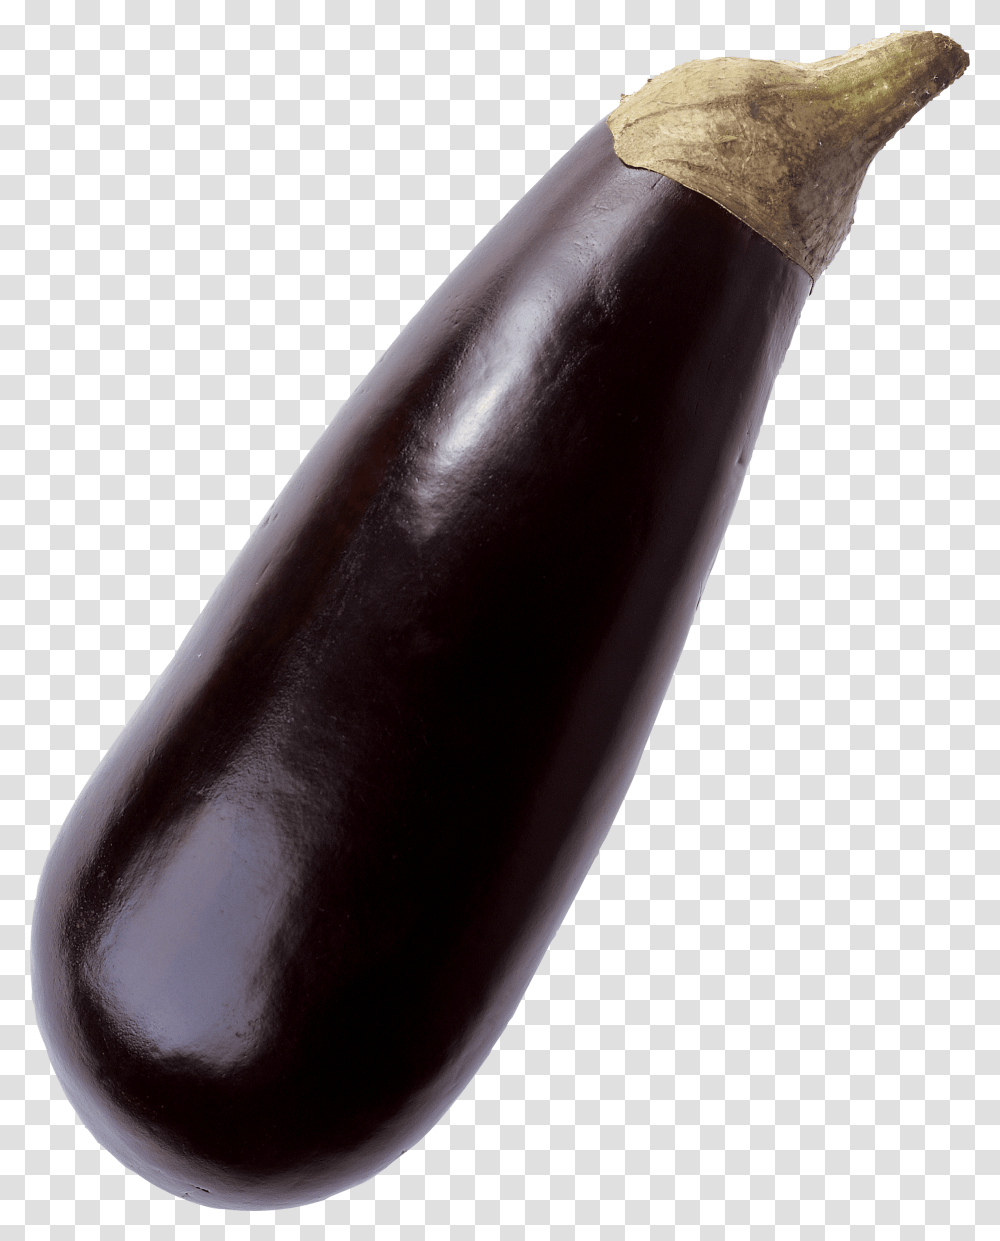 Eggplant, Vegetable, Food, Alcohol, Beverage Transparent Png